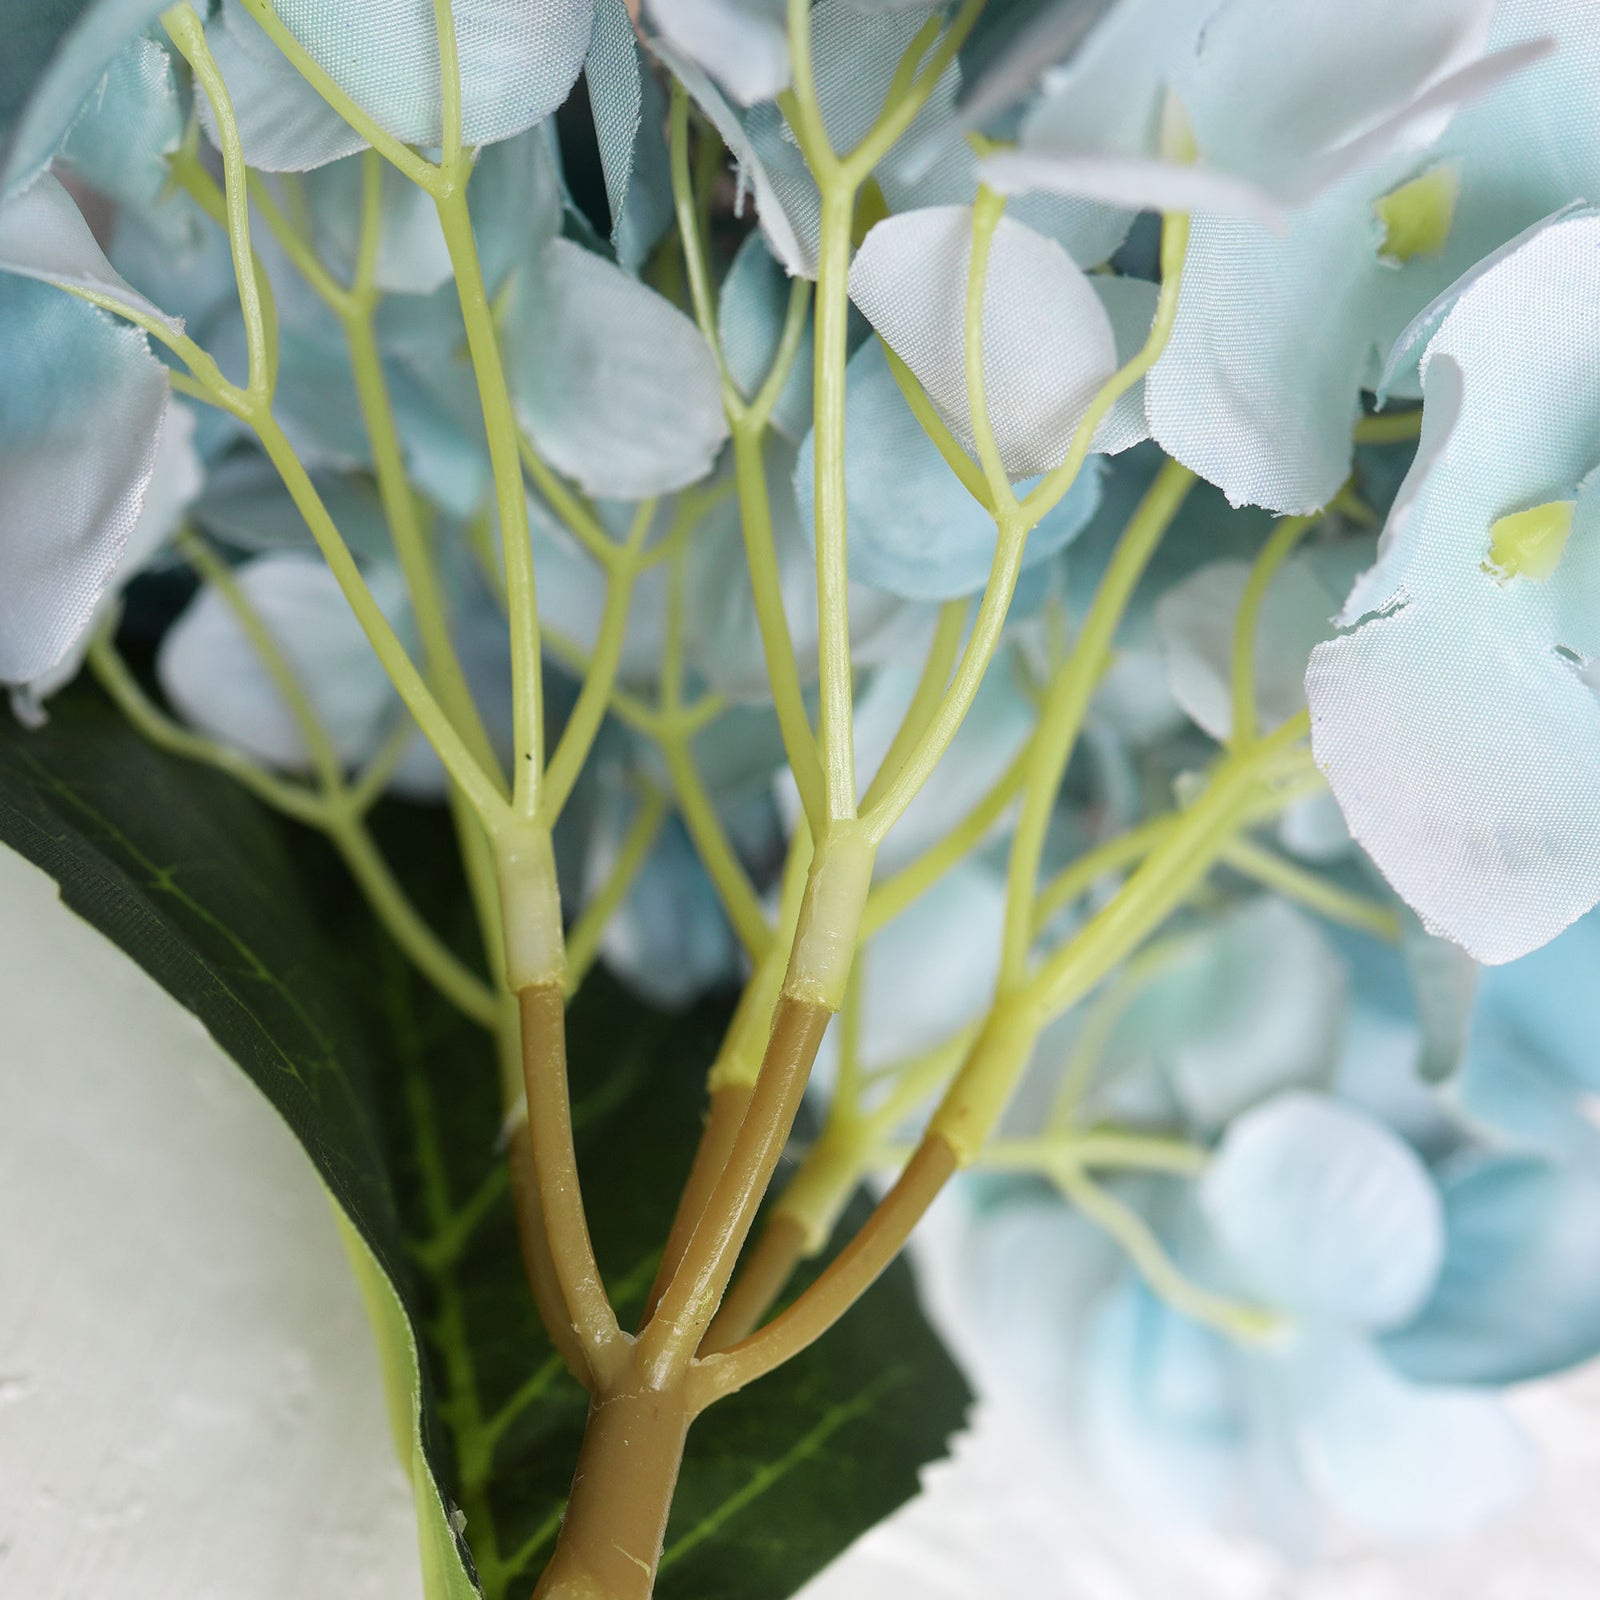 5 Stems Light Blue Artificial Silk Hydrangea Flowers